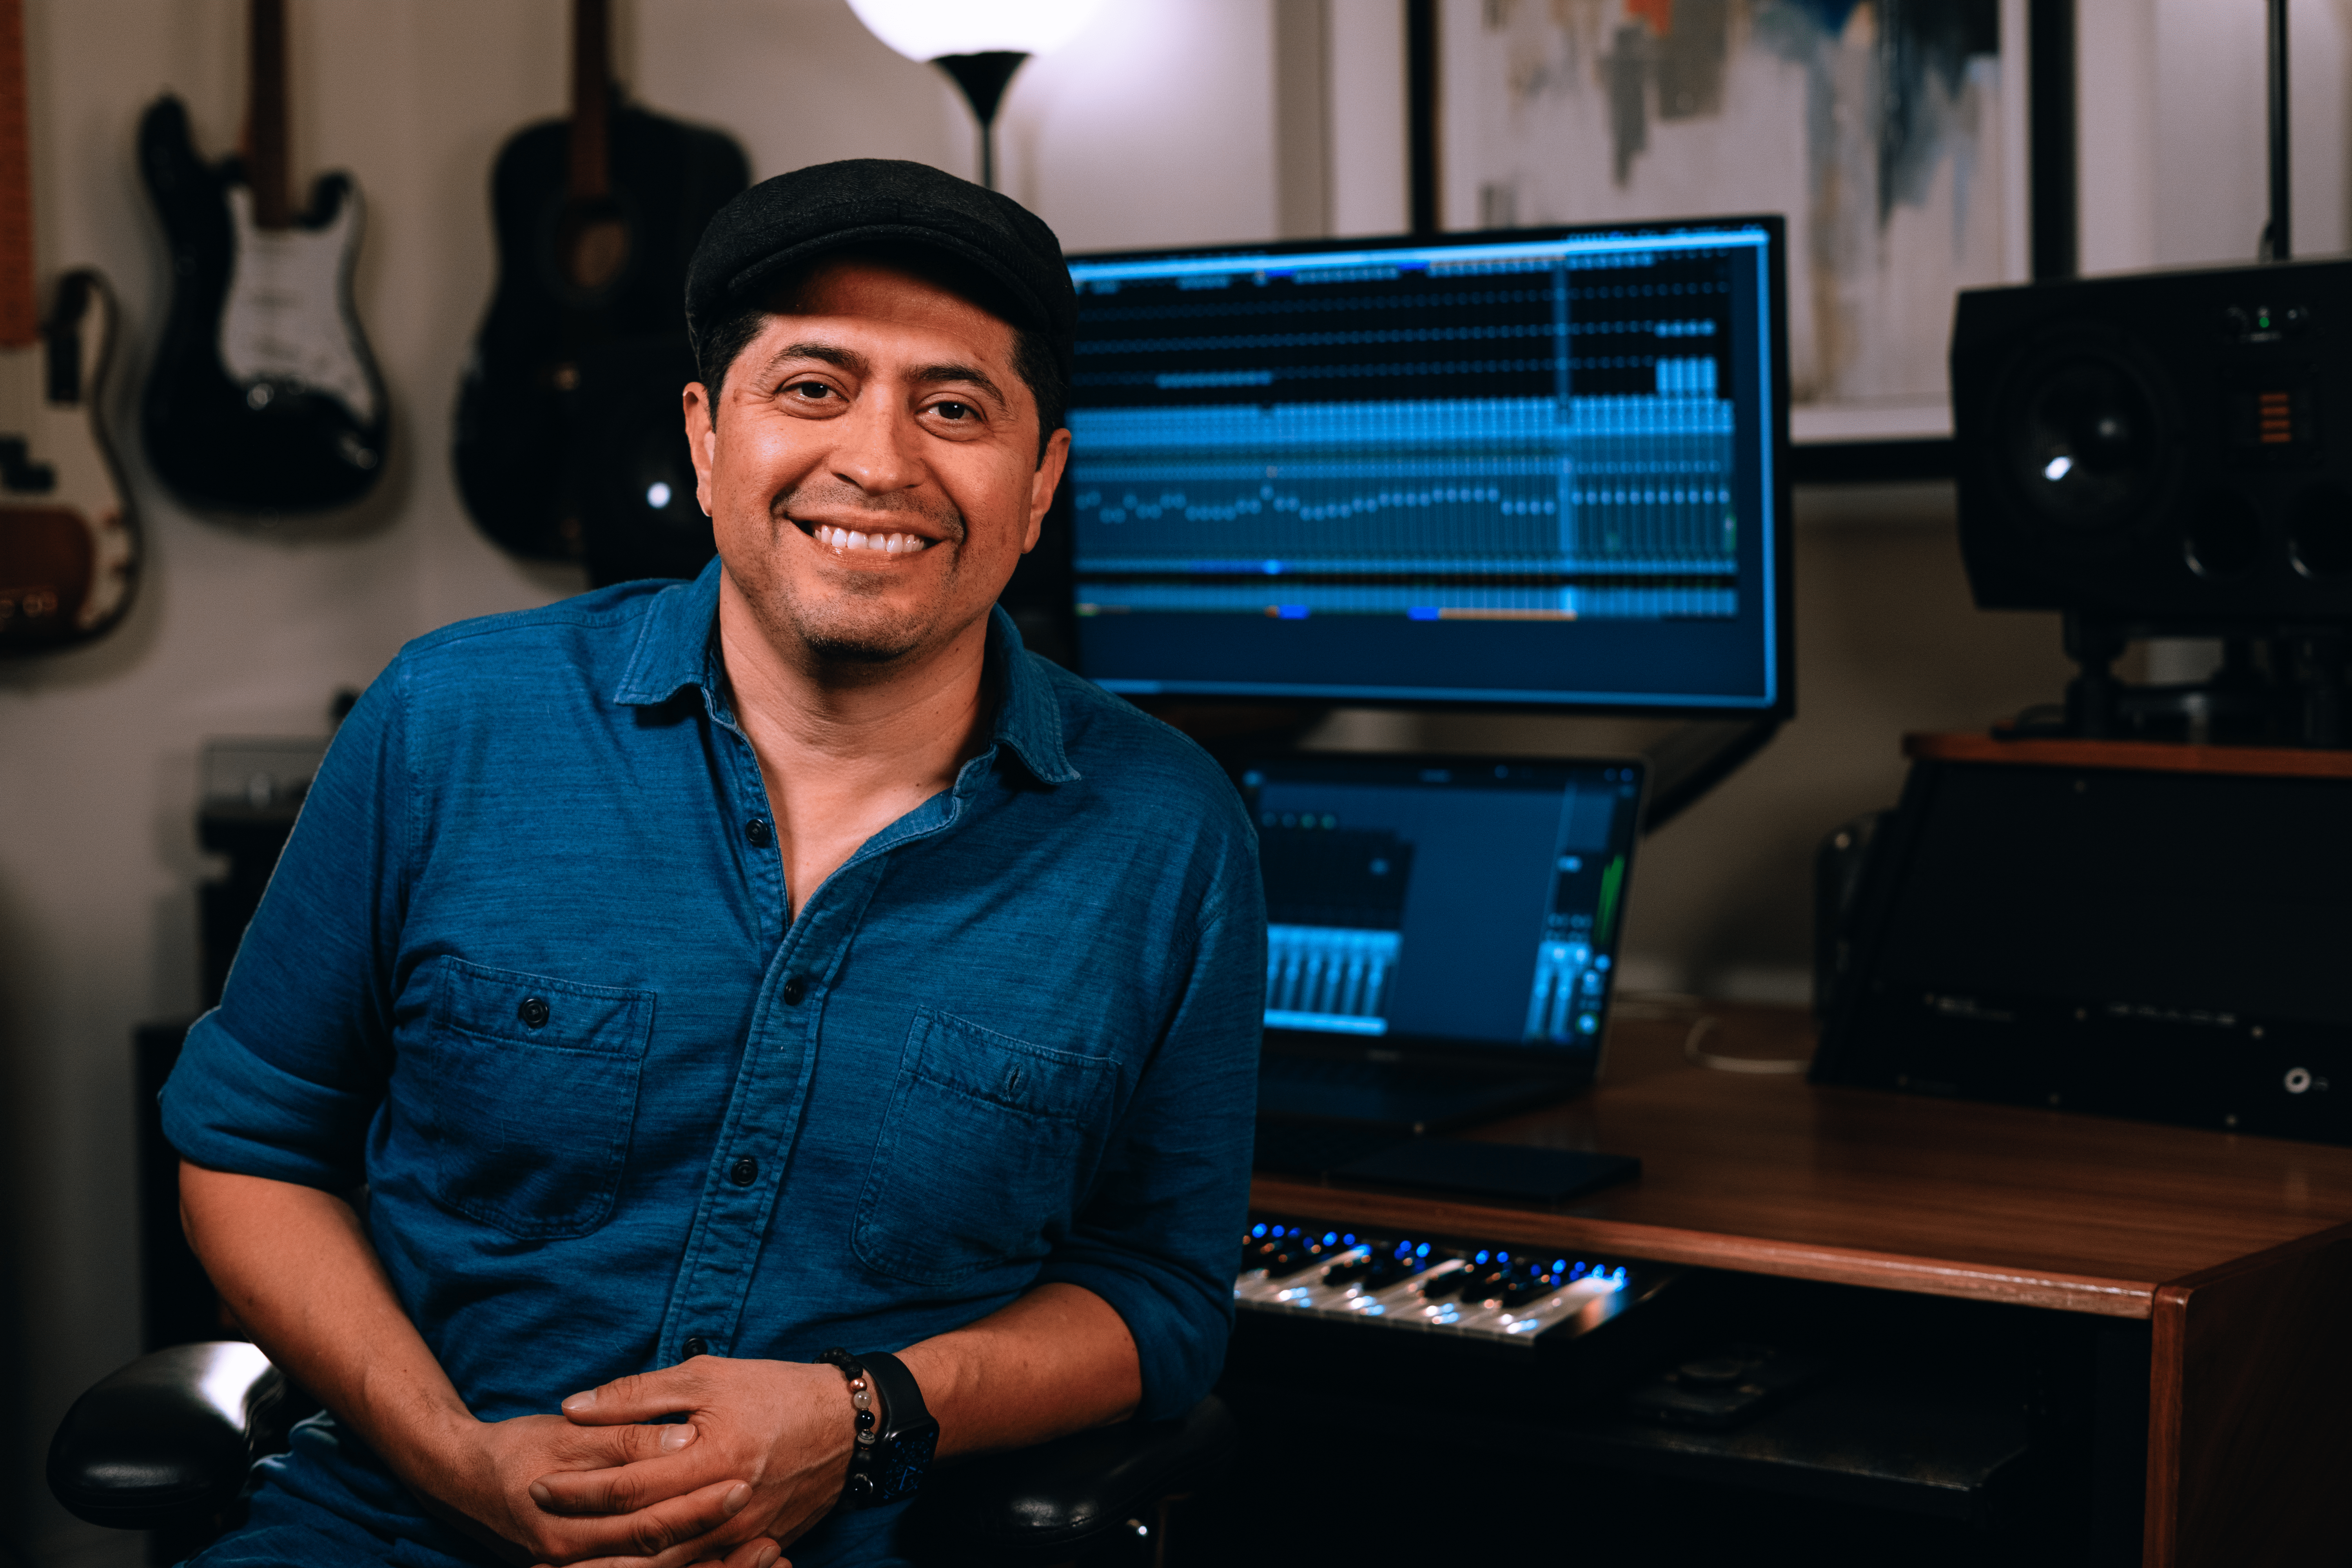 L'autore, produttore e ingegnere Miguel Soltero sorride seduto nel suo studio con delle chitarre sullo sfondo.